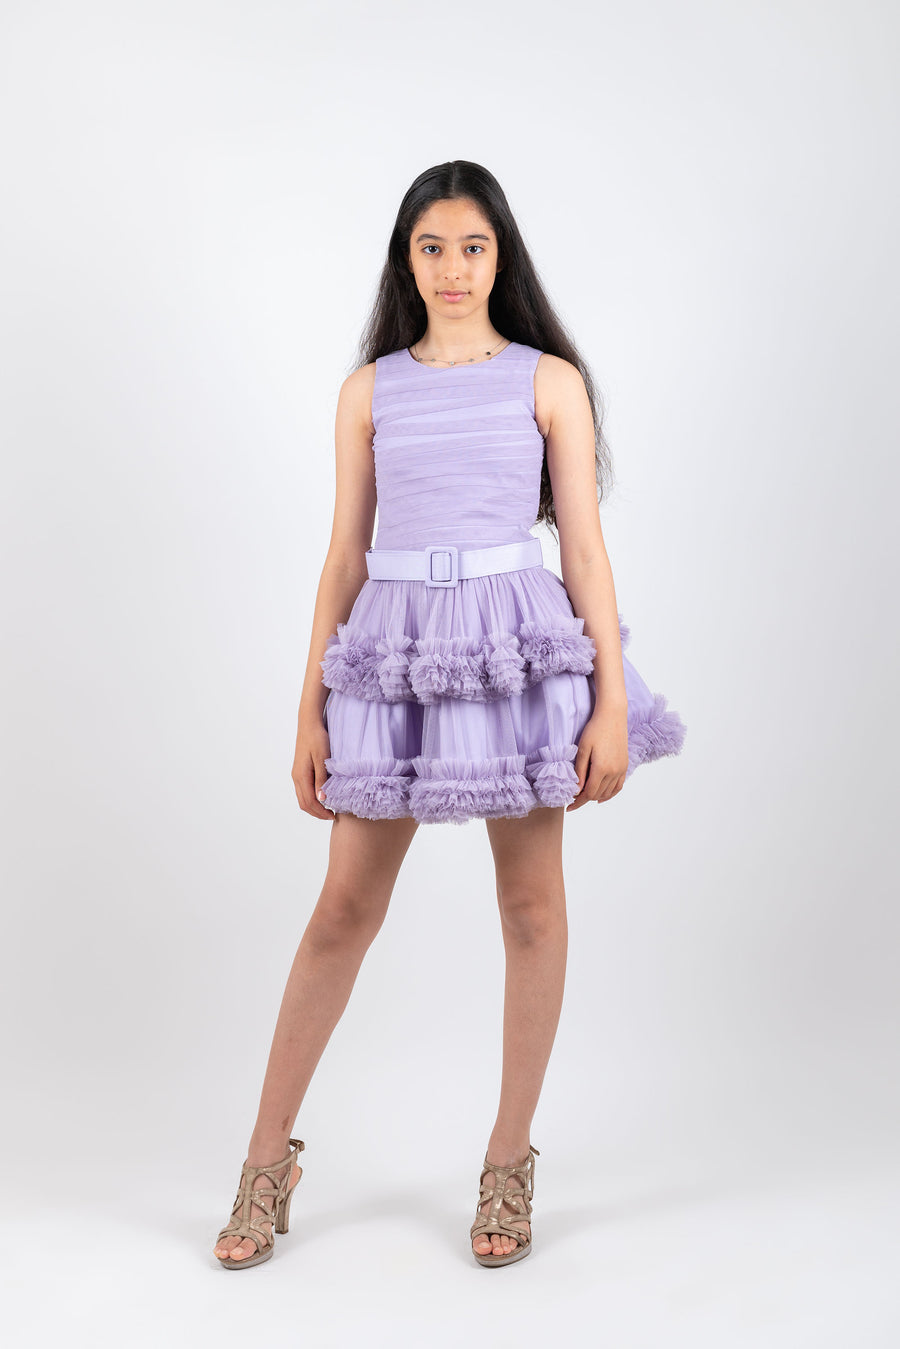 Lovely violet Girls Dress 8402